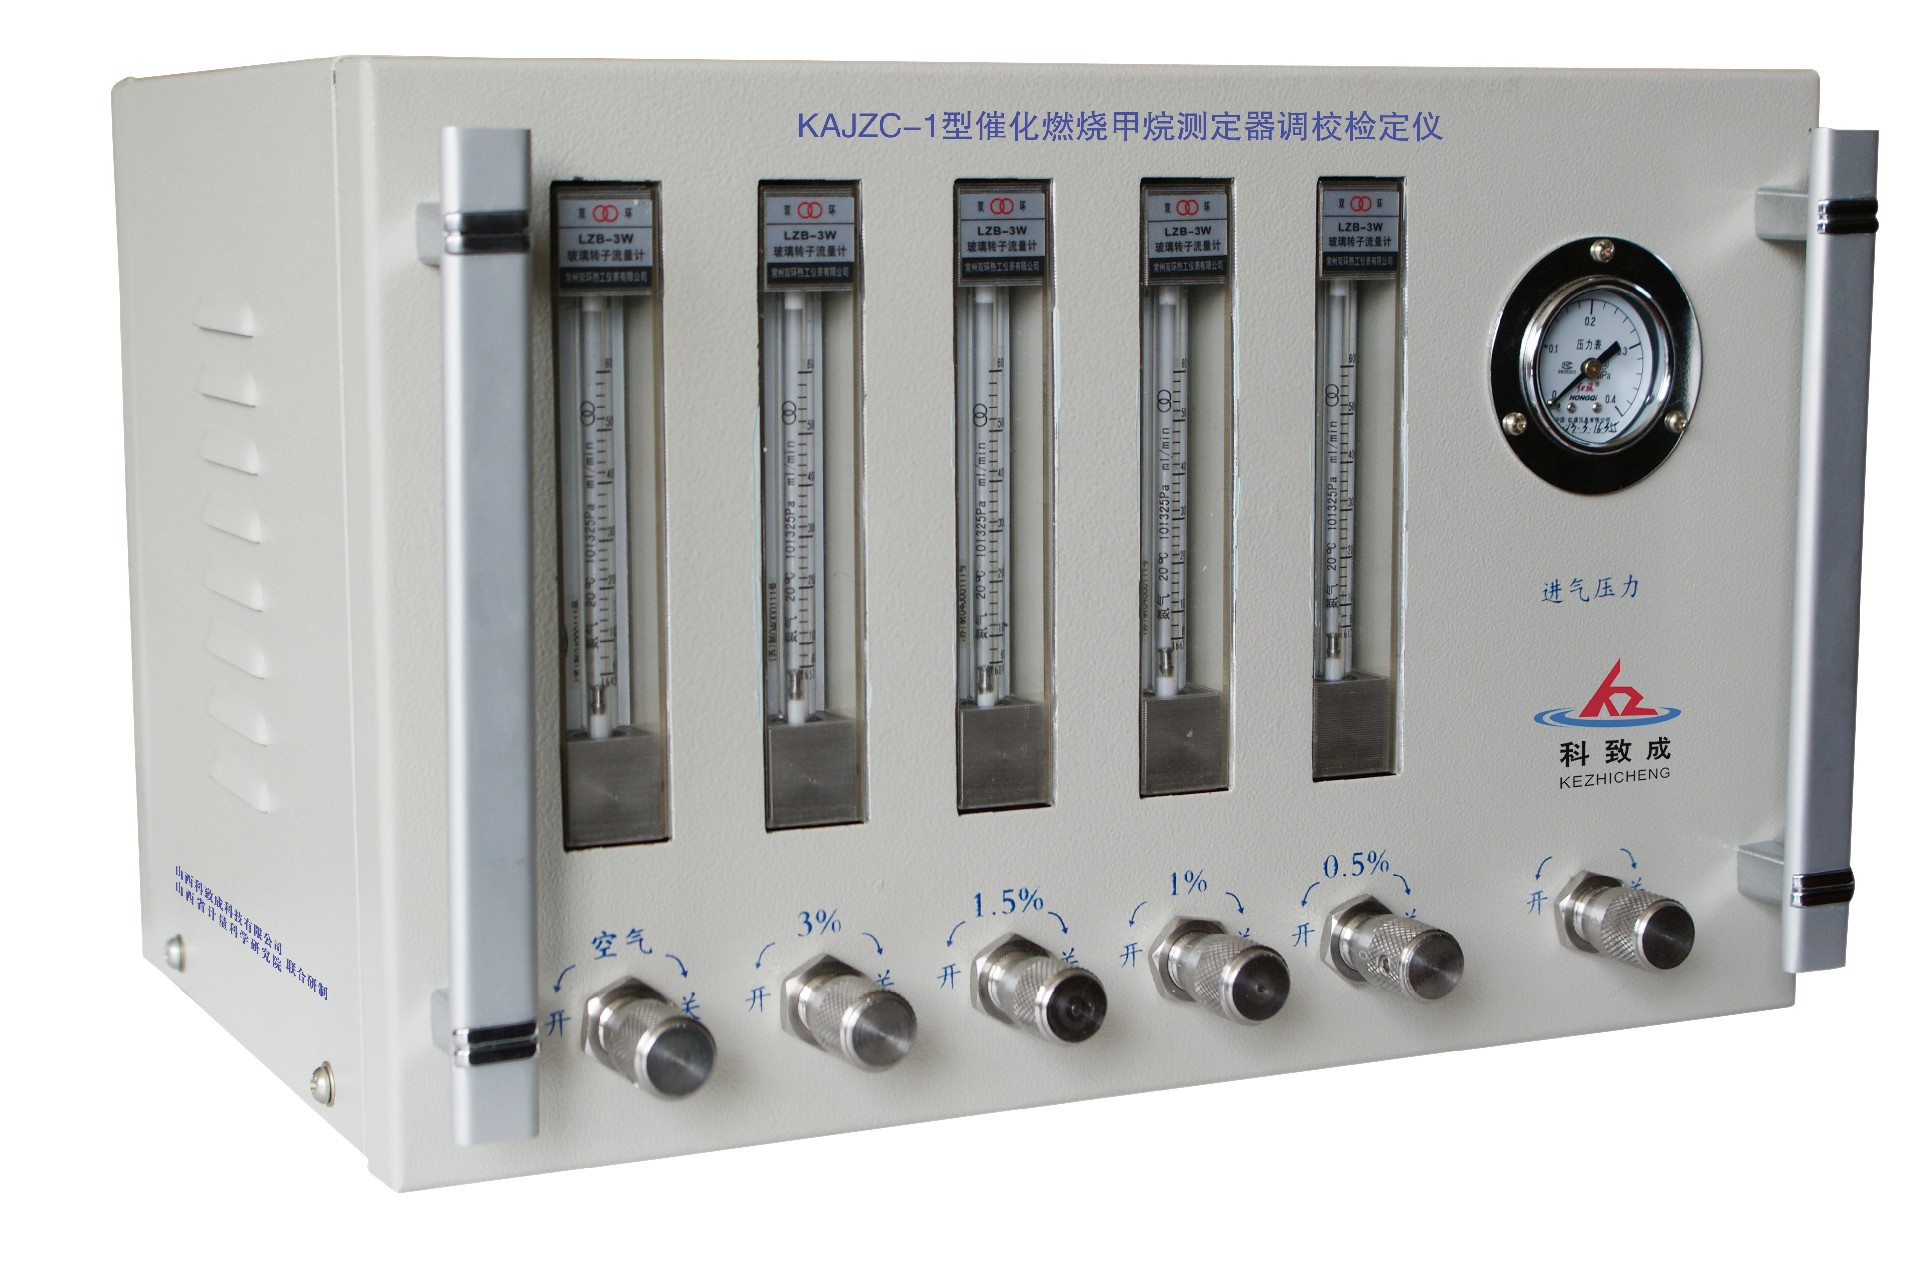 许昌KAJZC-1型催化燃烧甲烷测定器调校检定仪